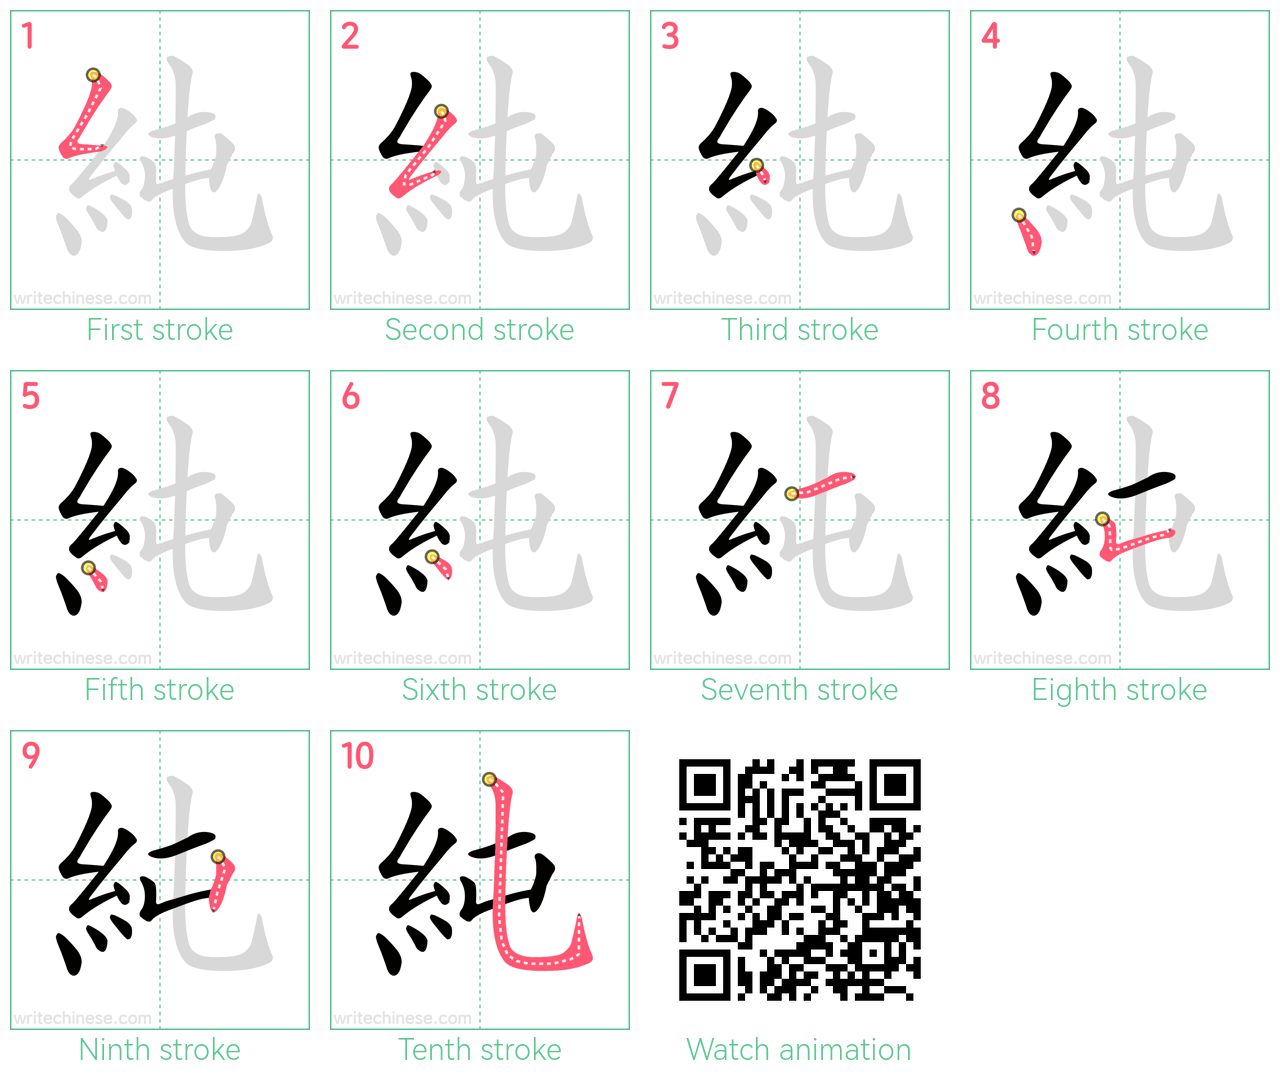 純 step-by-step stroke order diagrams